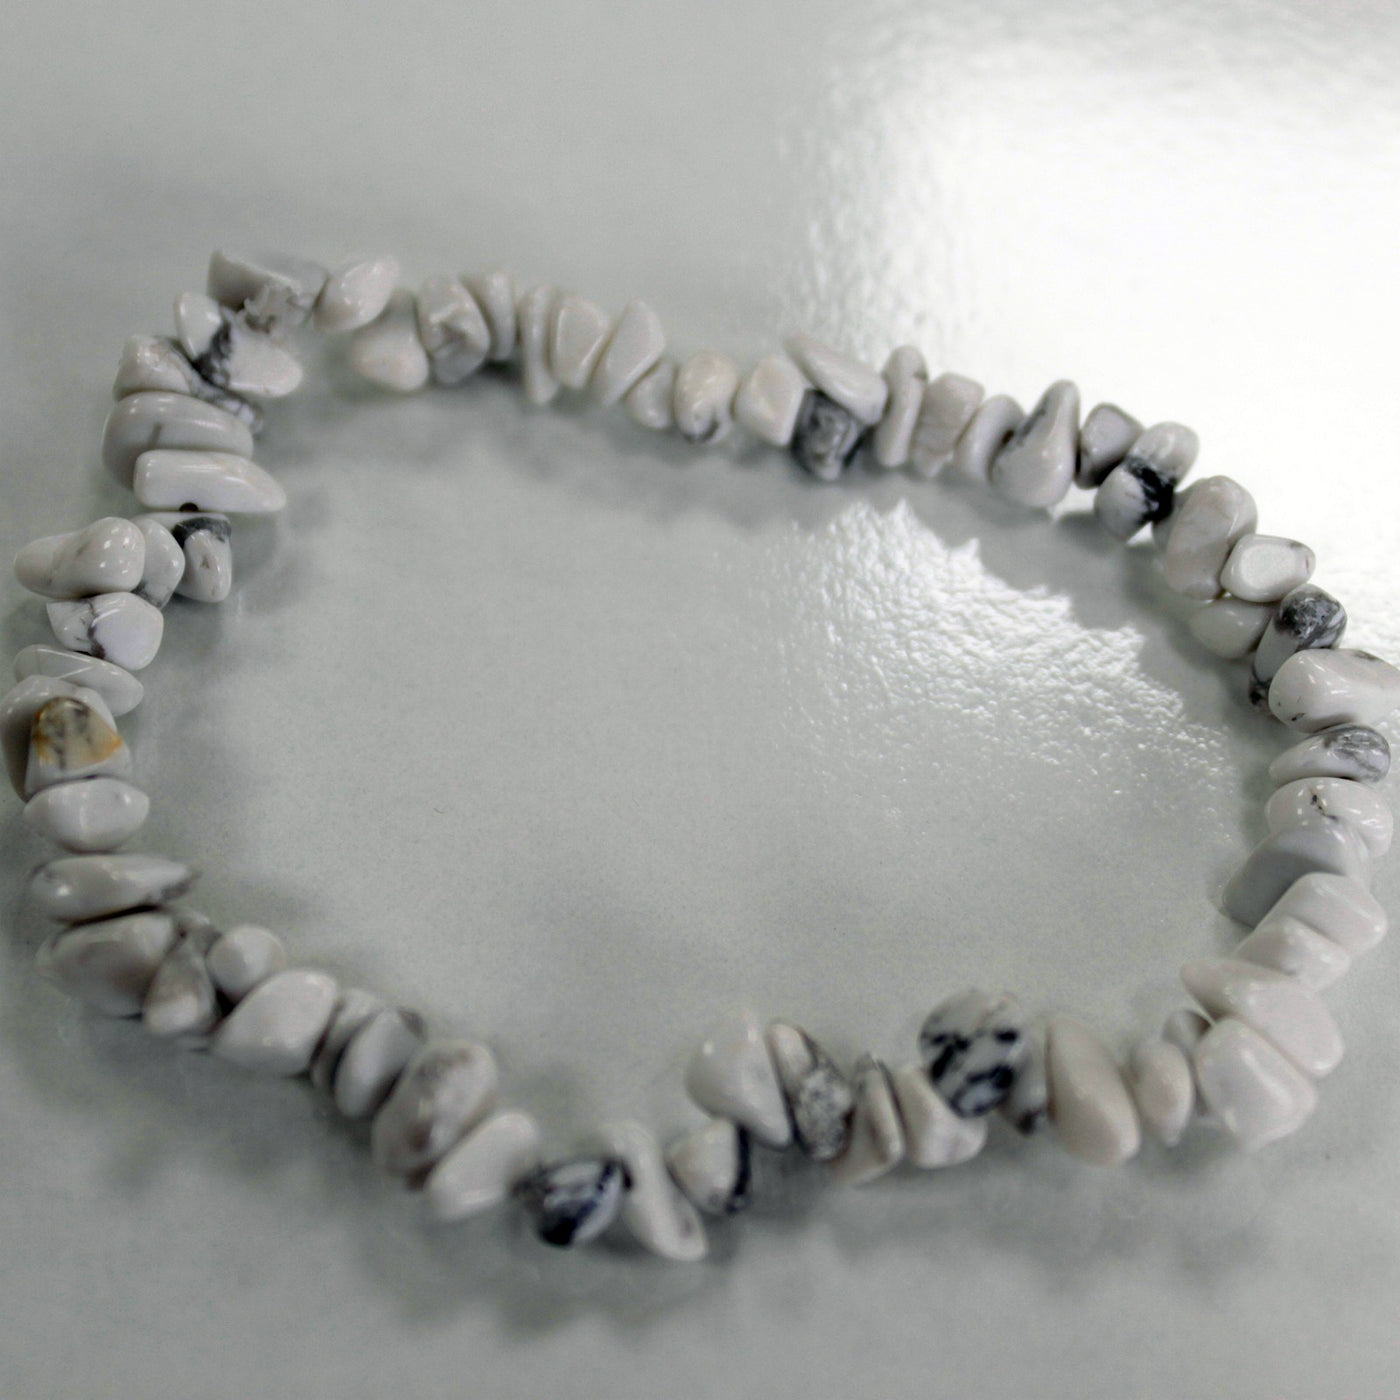 Unisex Chipped White Jasper Gemstone Bracelets.